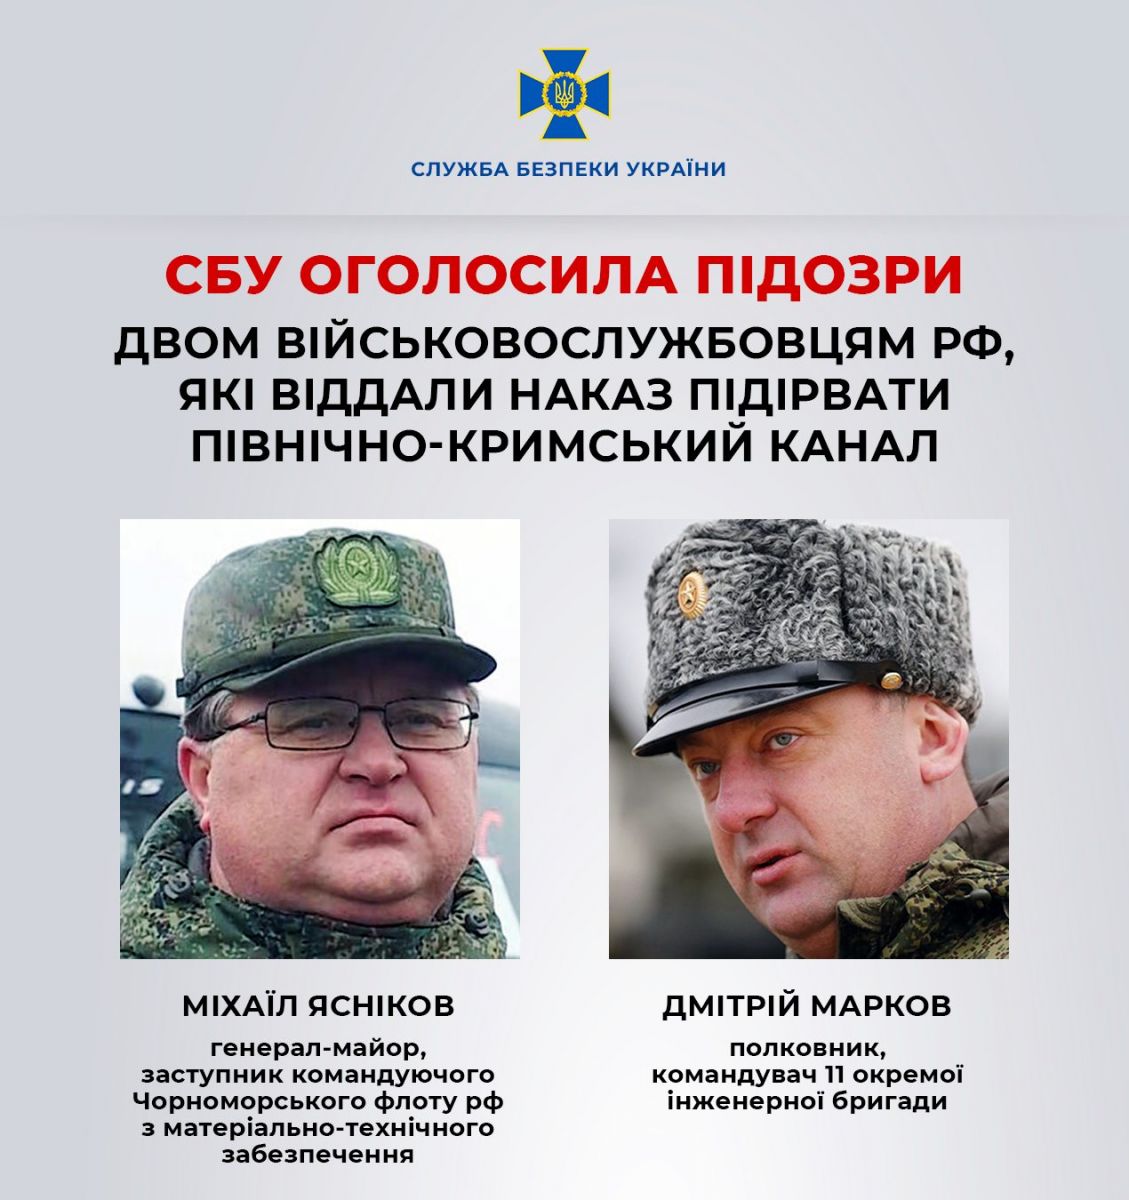 СБУ ідентифікувала двох російських офіцерів, які підірвали Північно-Кримський канал. Фото: СБУ